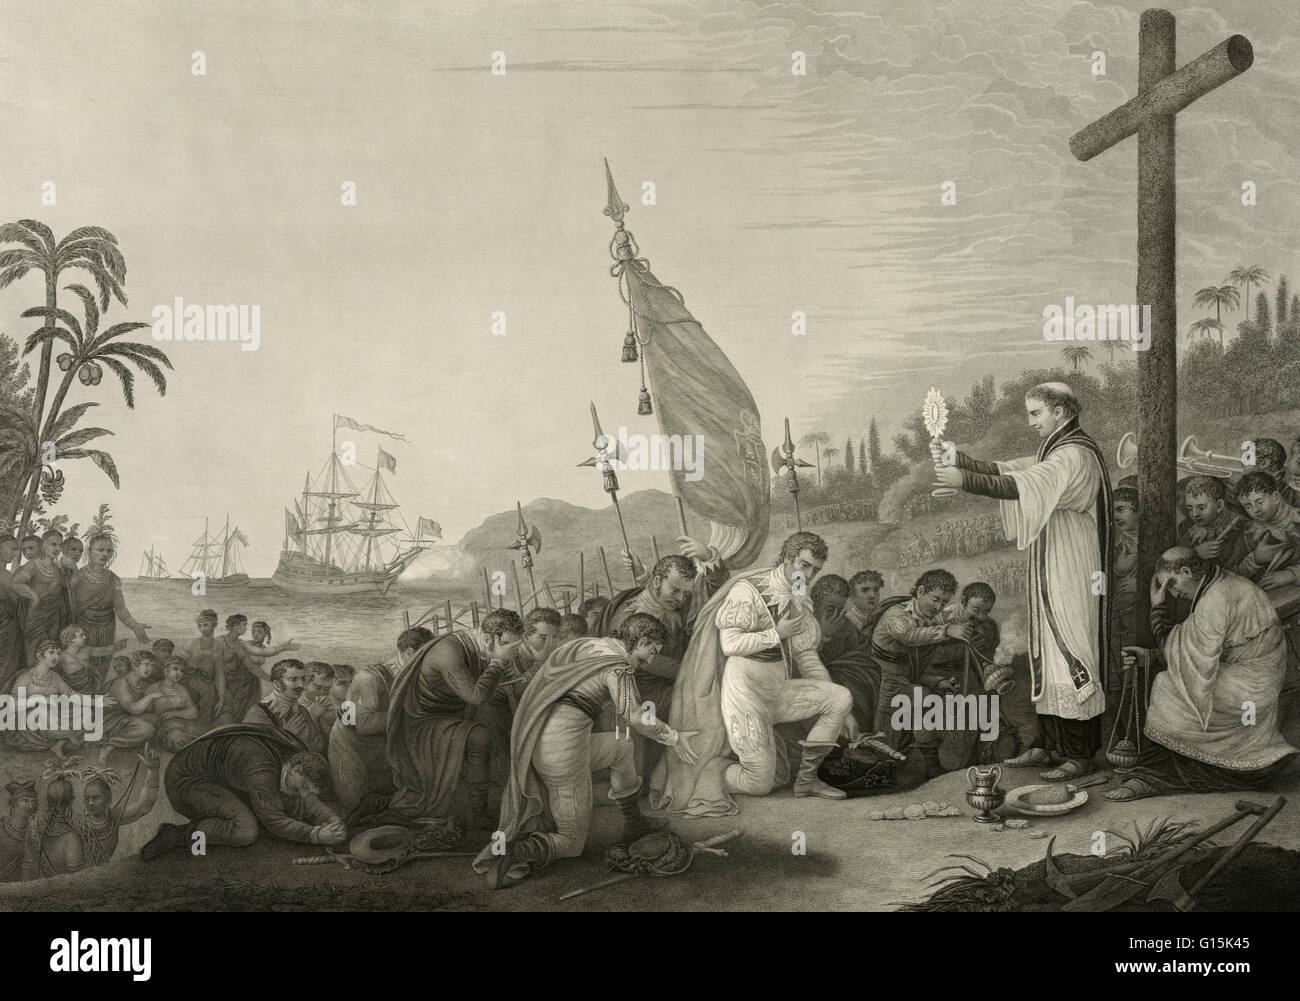 Gravur mit dem Titel: die erste Landung des Columbus in der neuen Welt. Drucken mit Christopher Columbus und Crew kniend vor dem Priester beim Gottesdienst. Christopher Columbus (Oktober 30 oder 31, 1451 - 20. Mai 1506) italienische Entdecker, Kolonisator, und Stockfoto